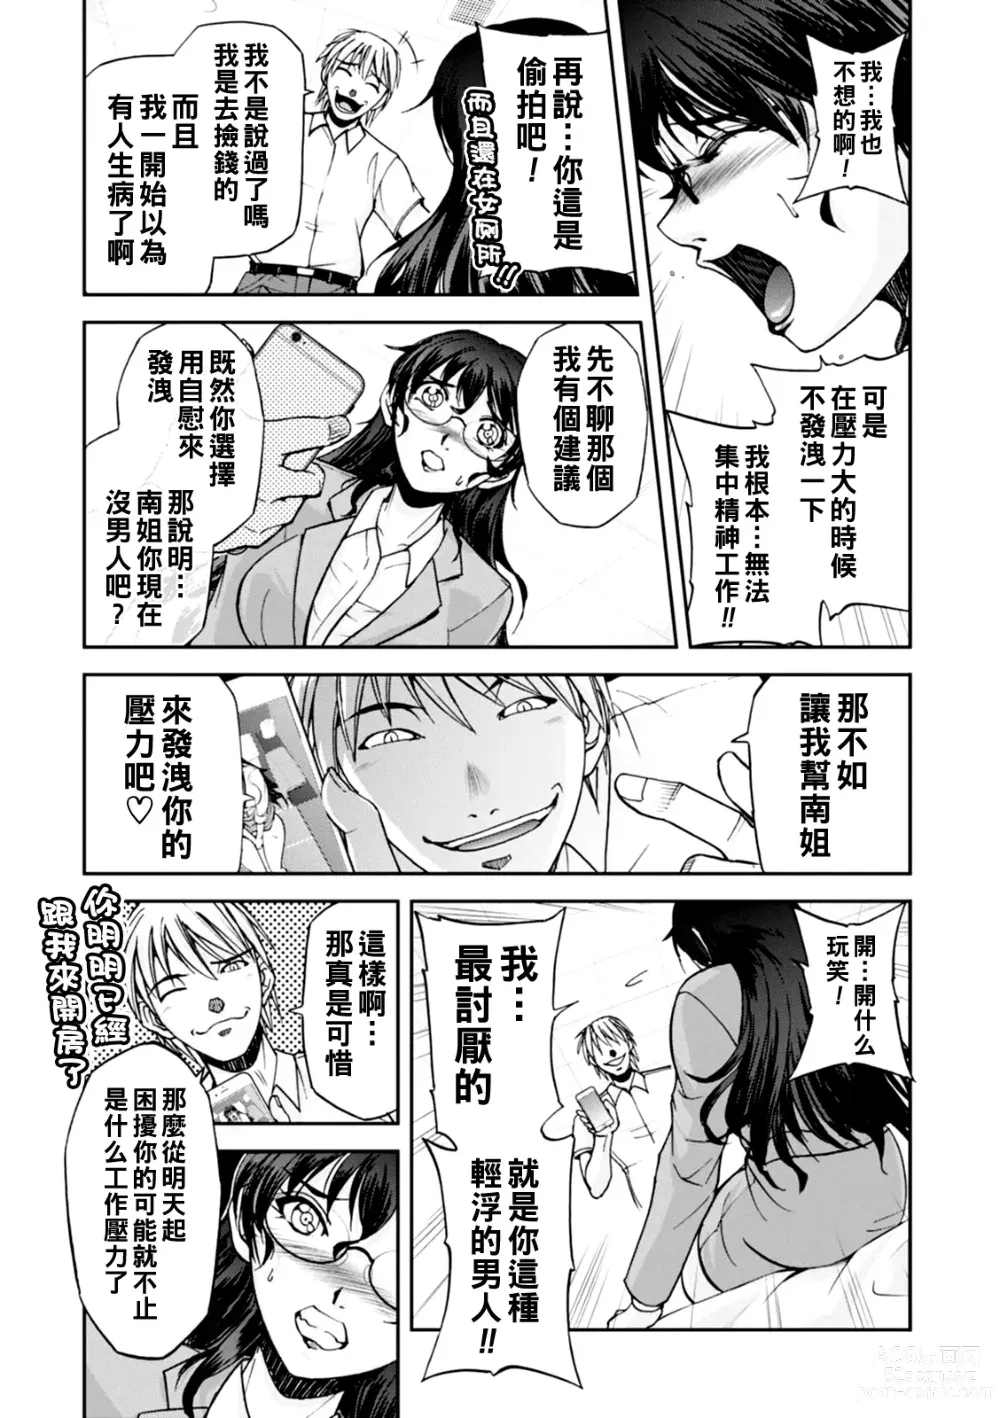 Page 10 of manga Maruhadaka no Minami-san Ch. 1-4